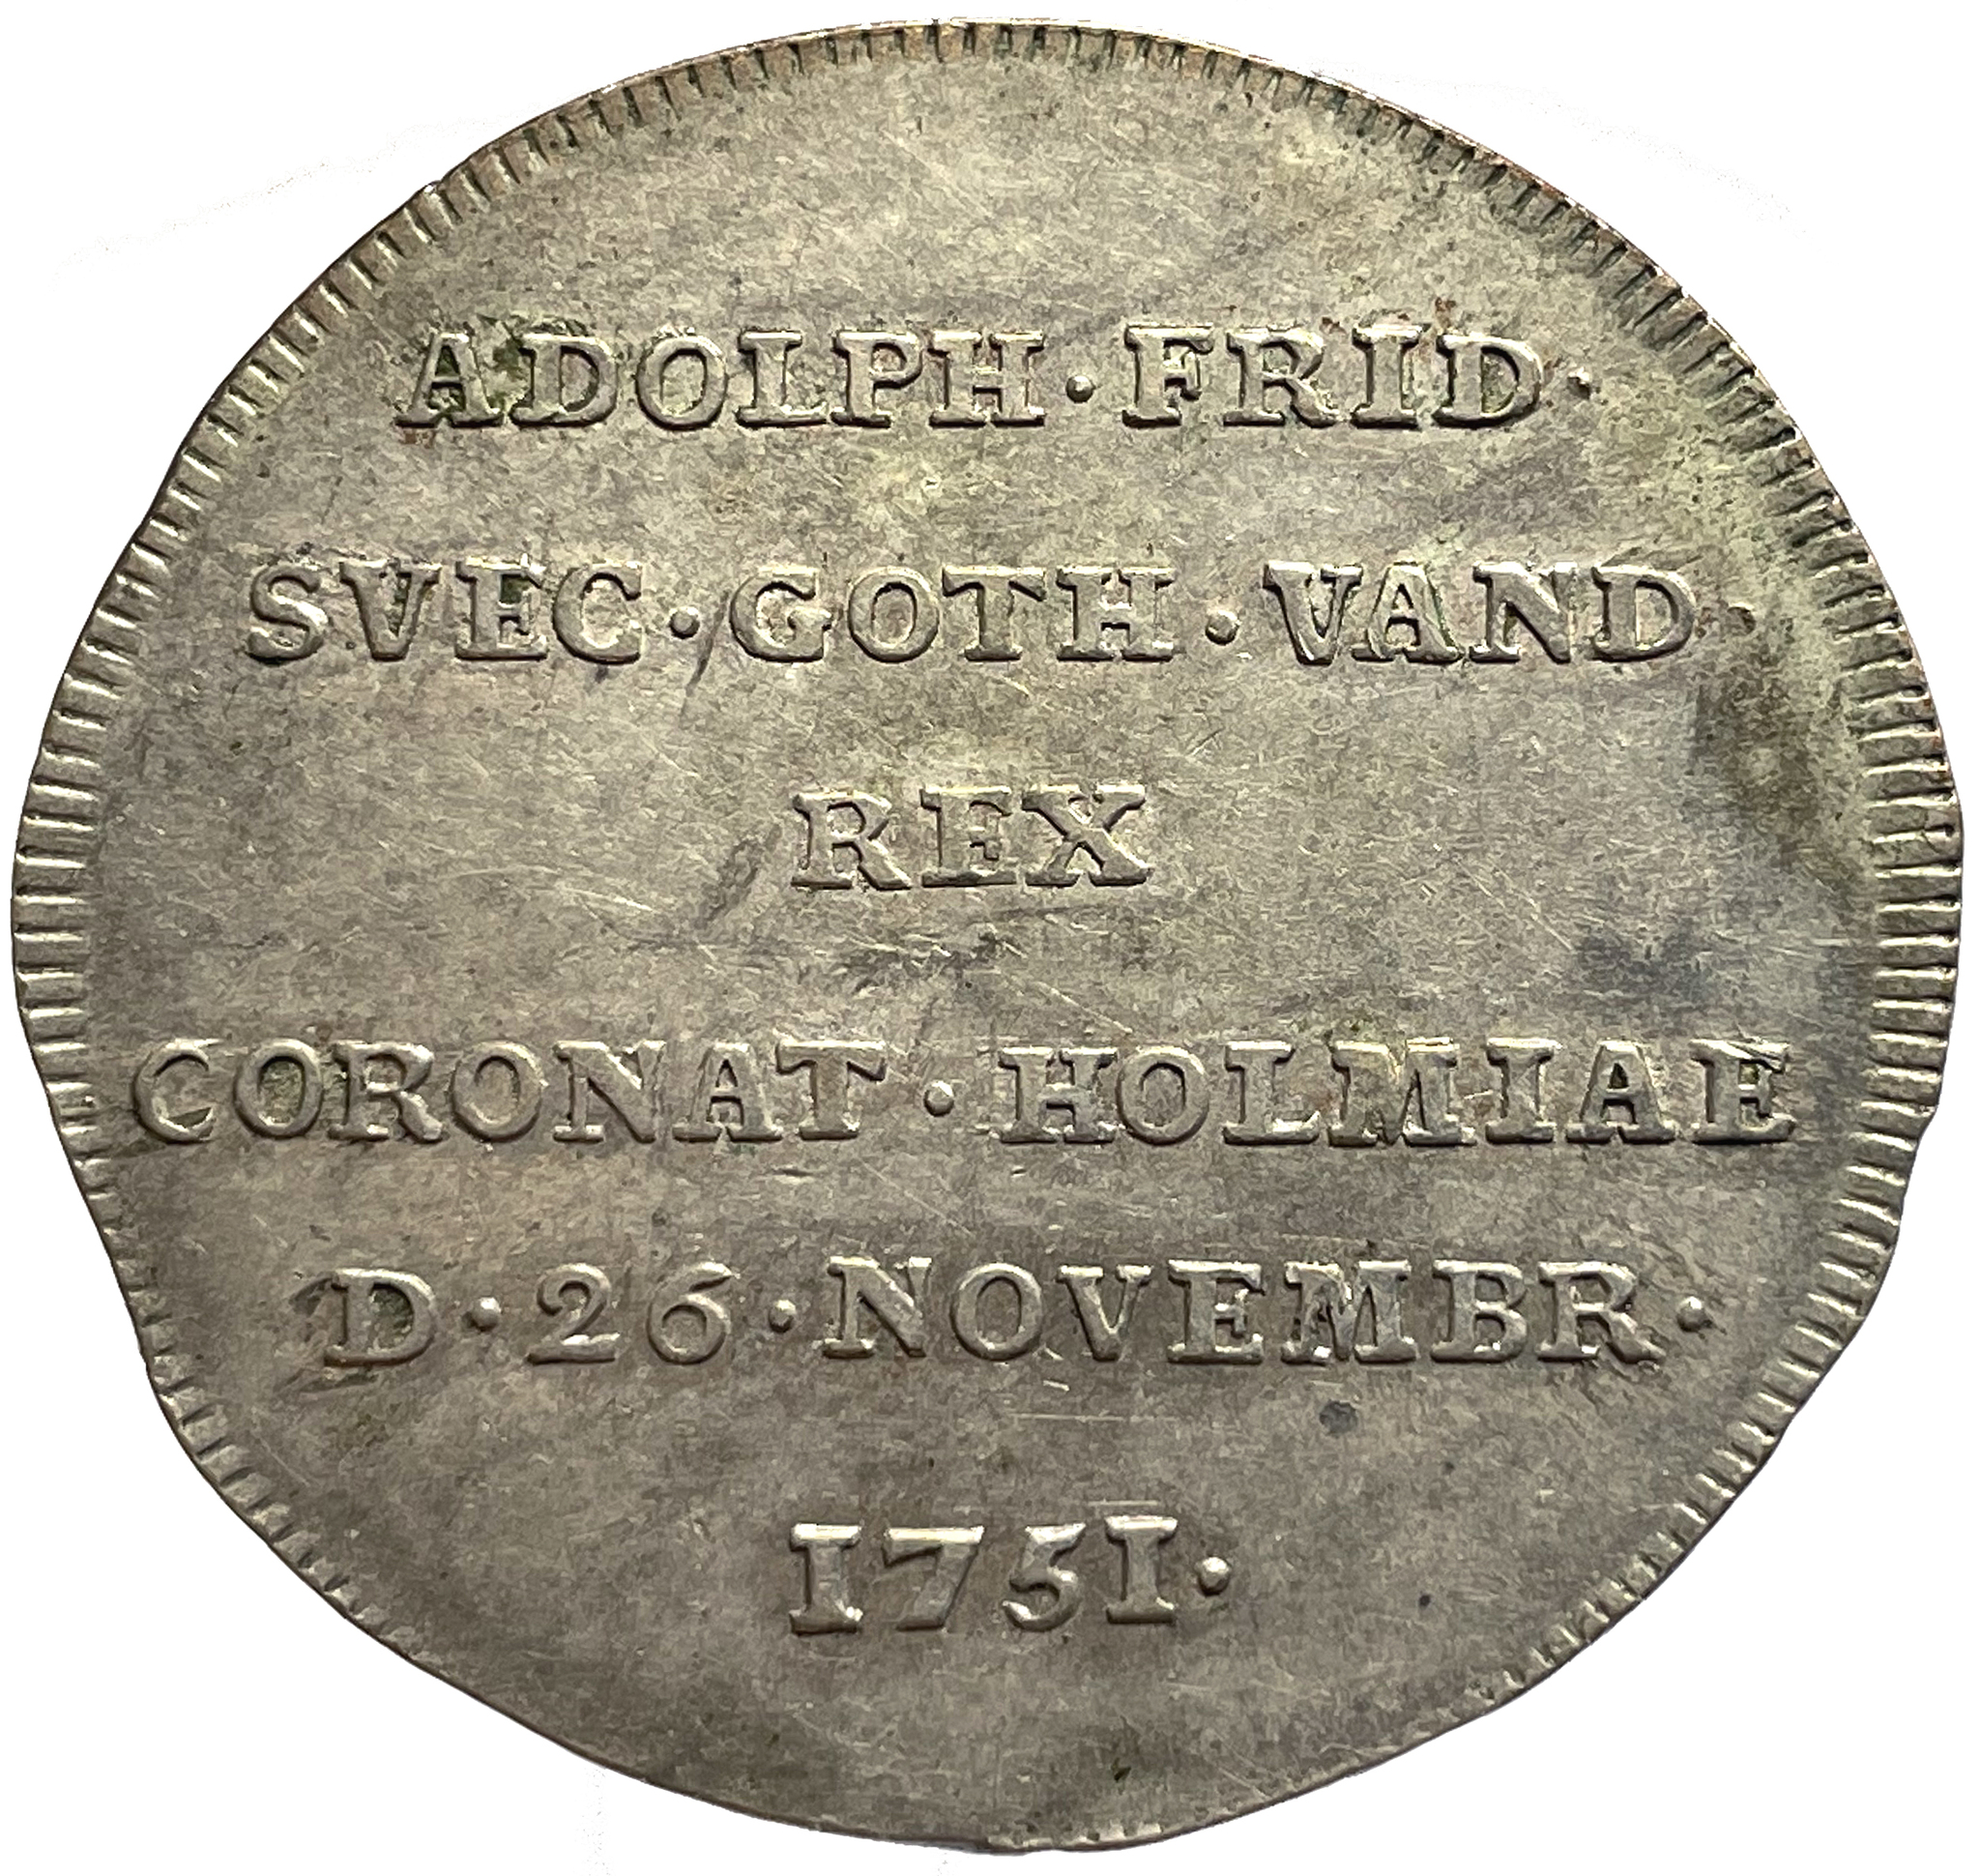 Adolf Fredrik, 2Mark 1751 - Kastmynt till konungens kröning - Vackert exemplar